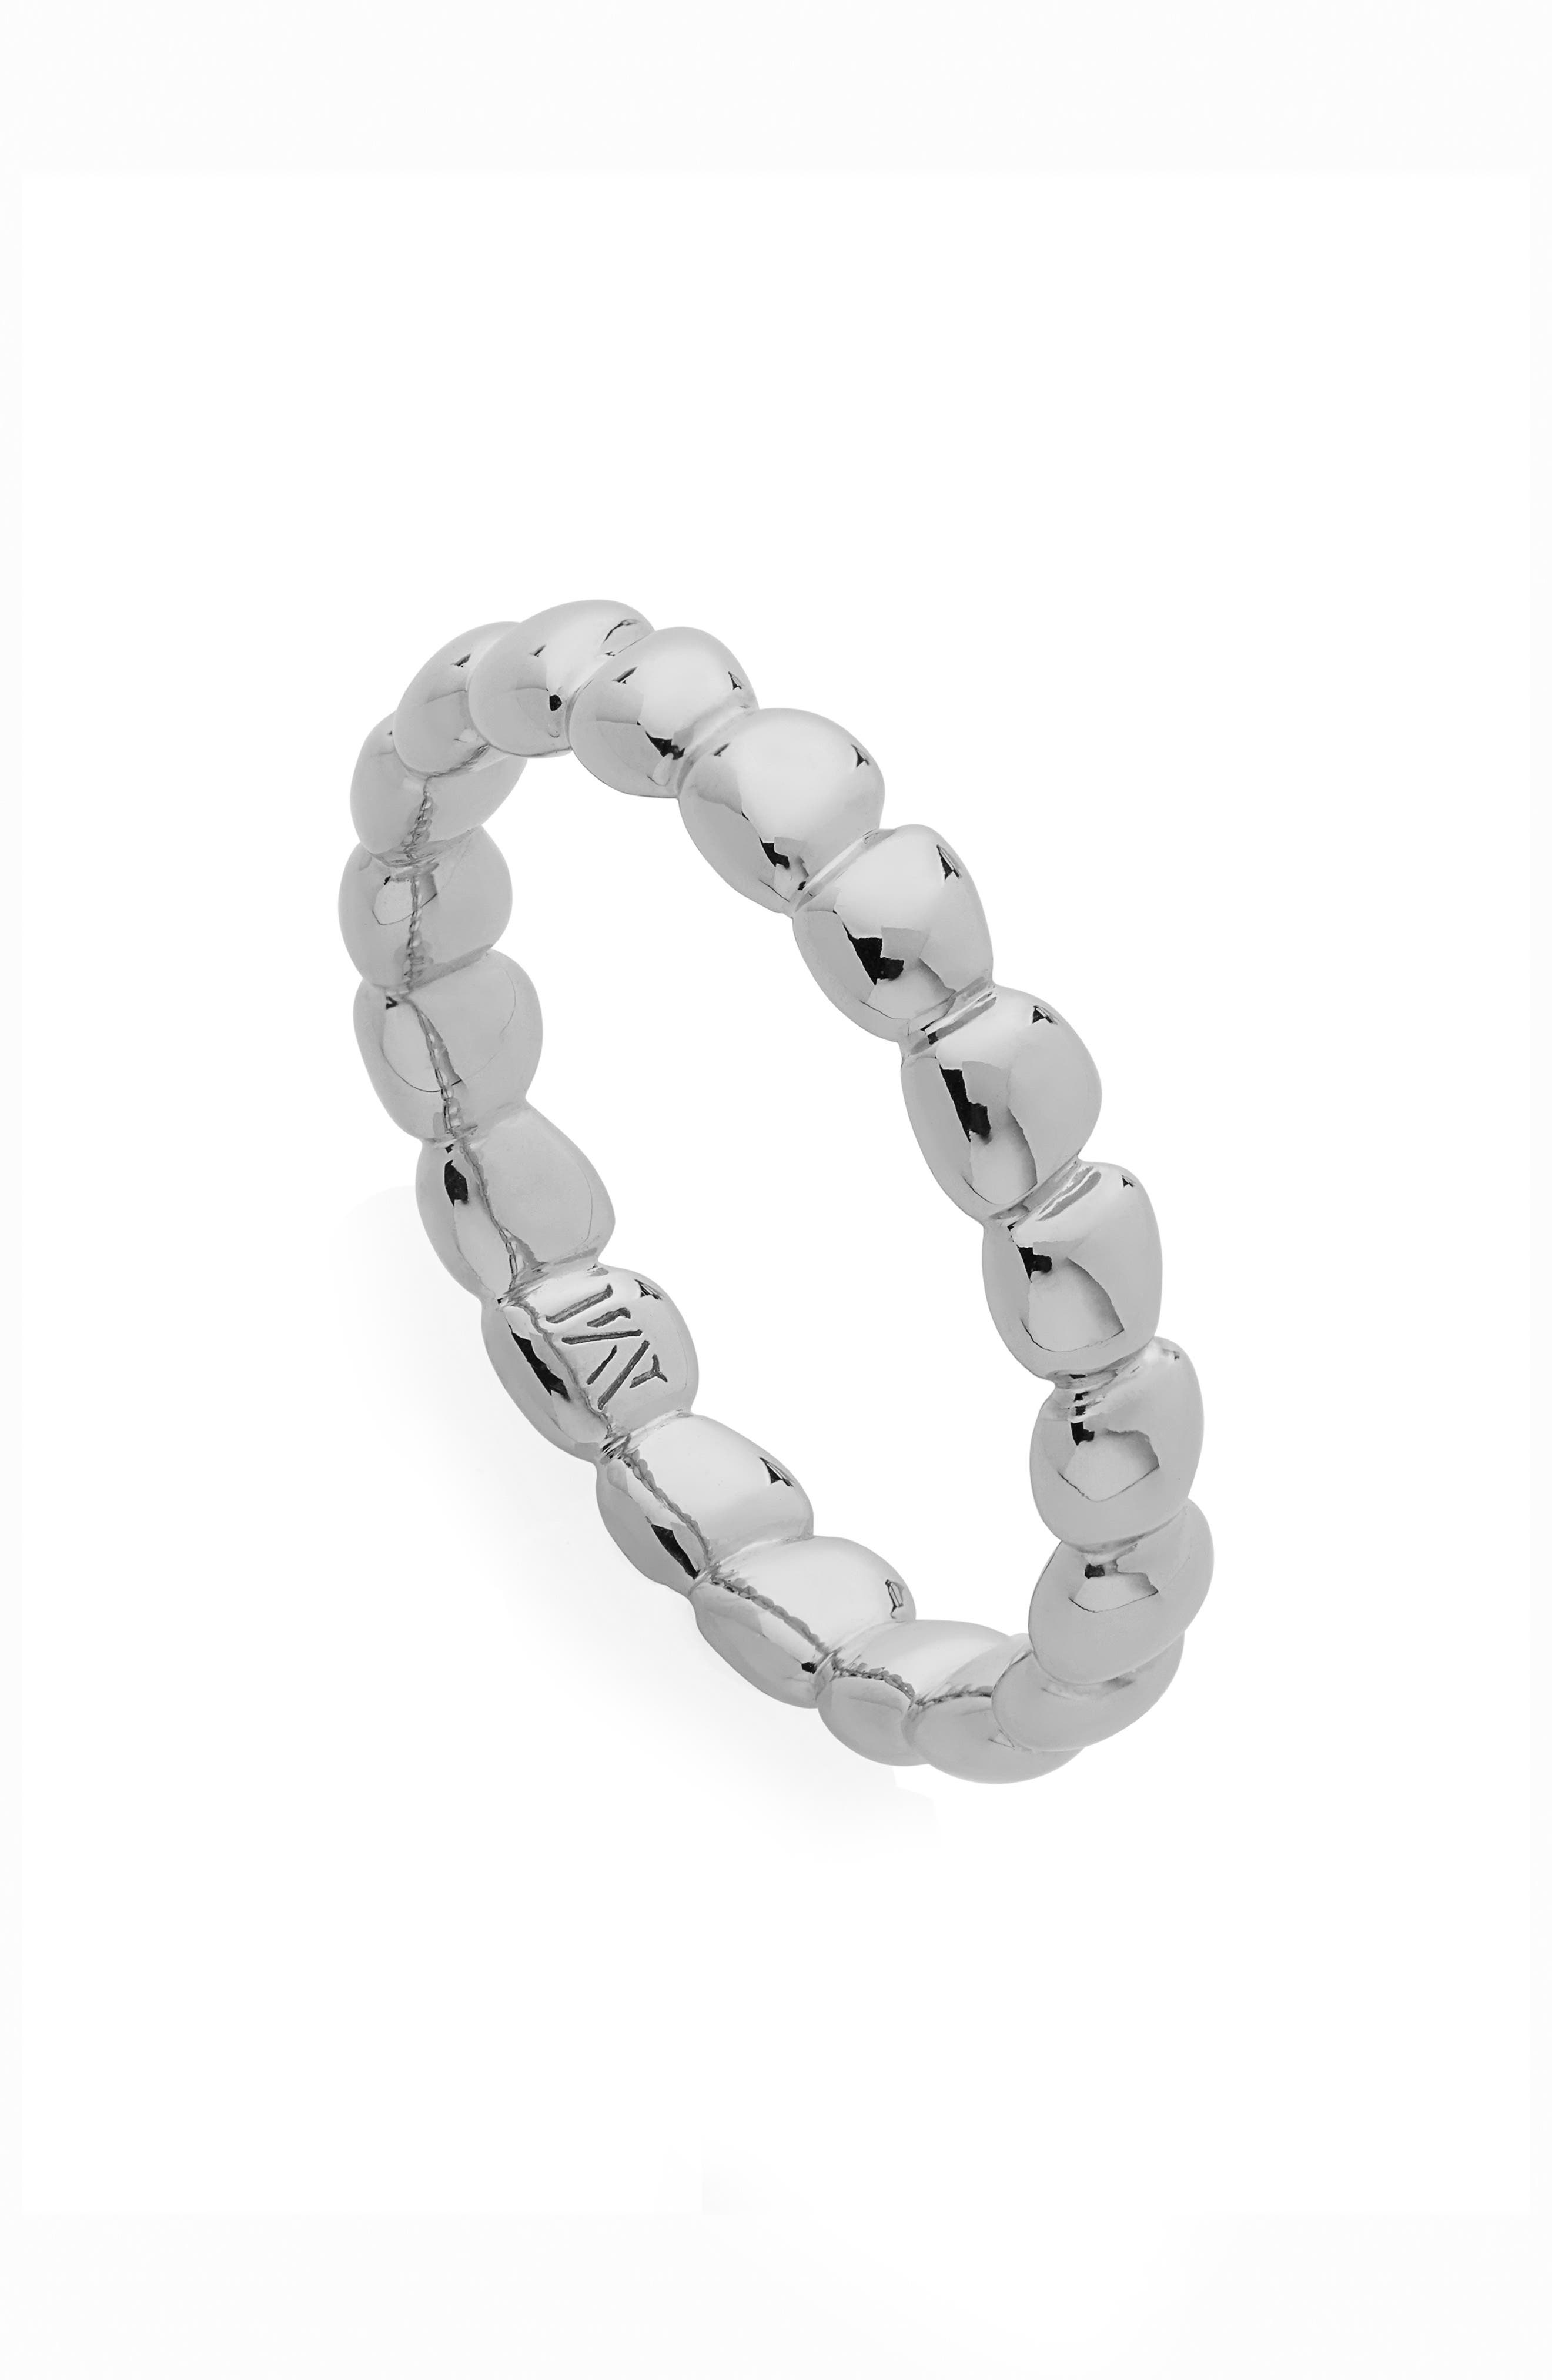 Stackable Rings Adjustable Rings Open Rings Delicate Pearl Rings for Women Pearl Rings